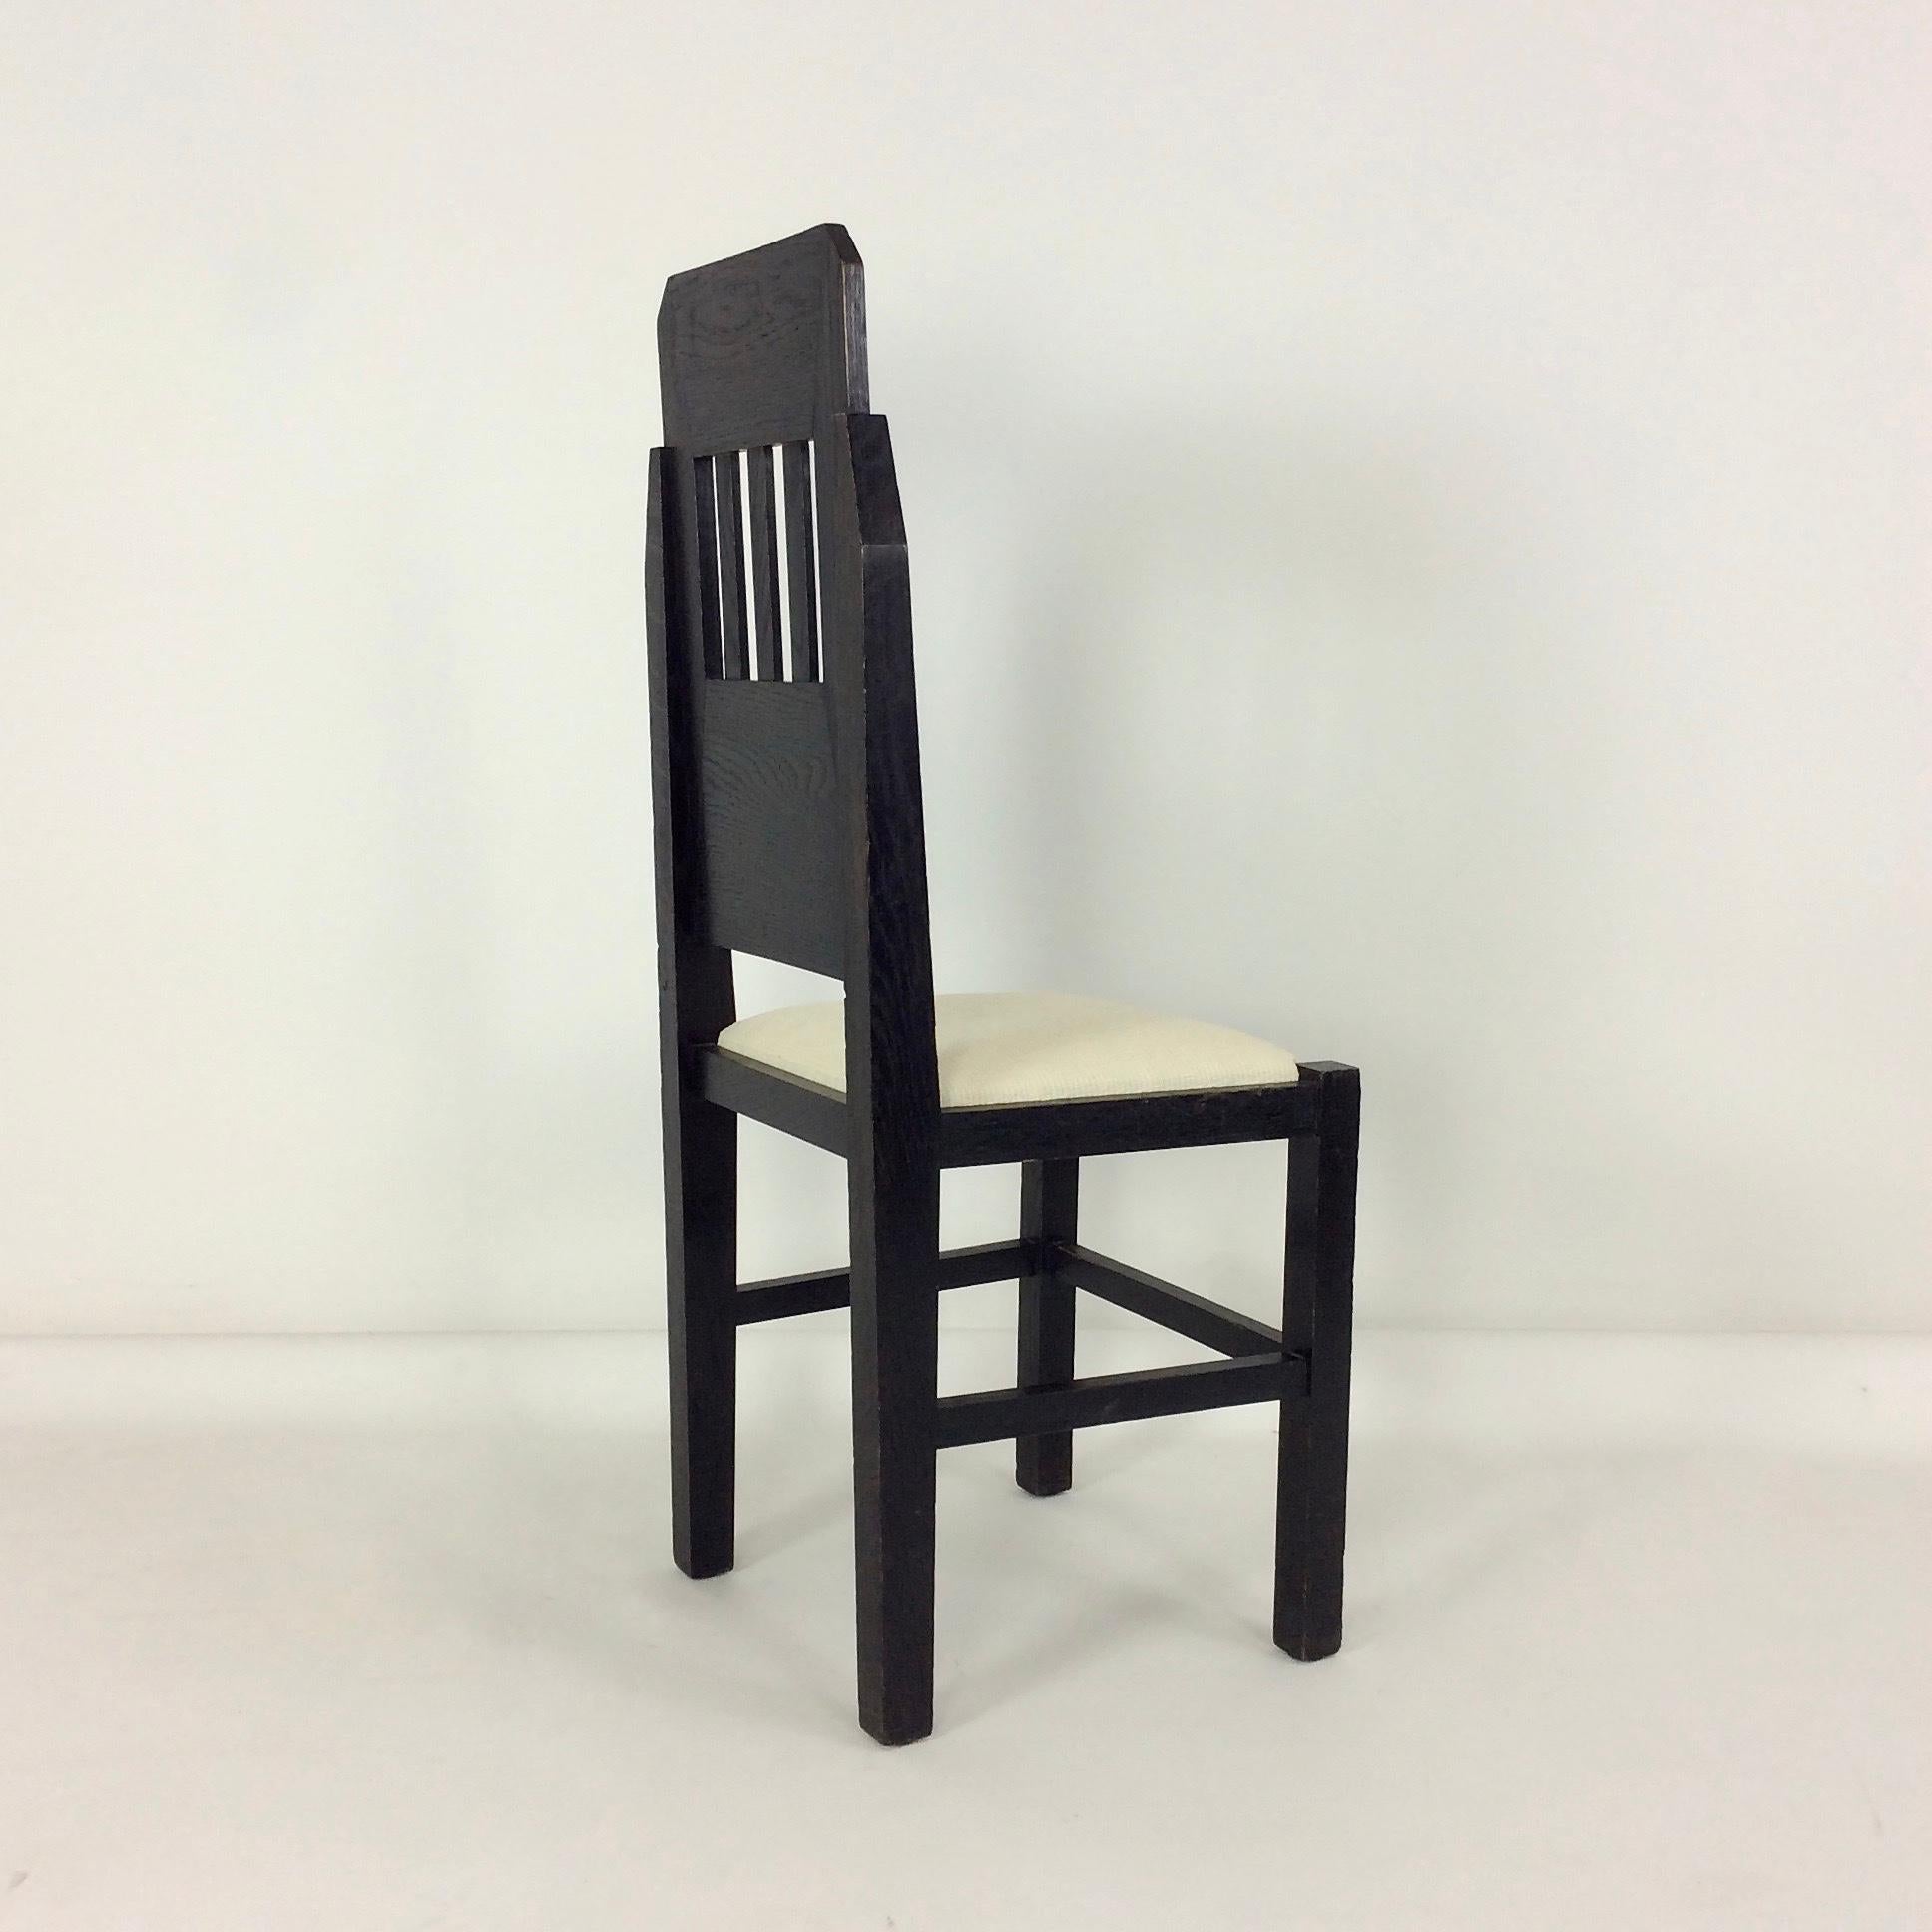 Belgian Marcel-Louis Baugniet Modernist Chair, circa 1925, Belgium For Sale